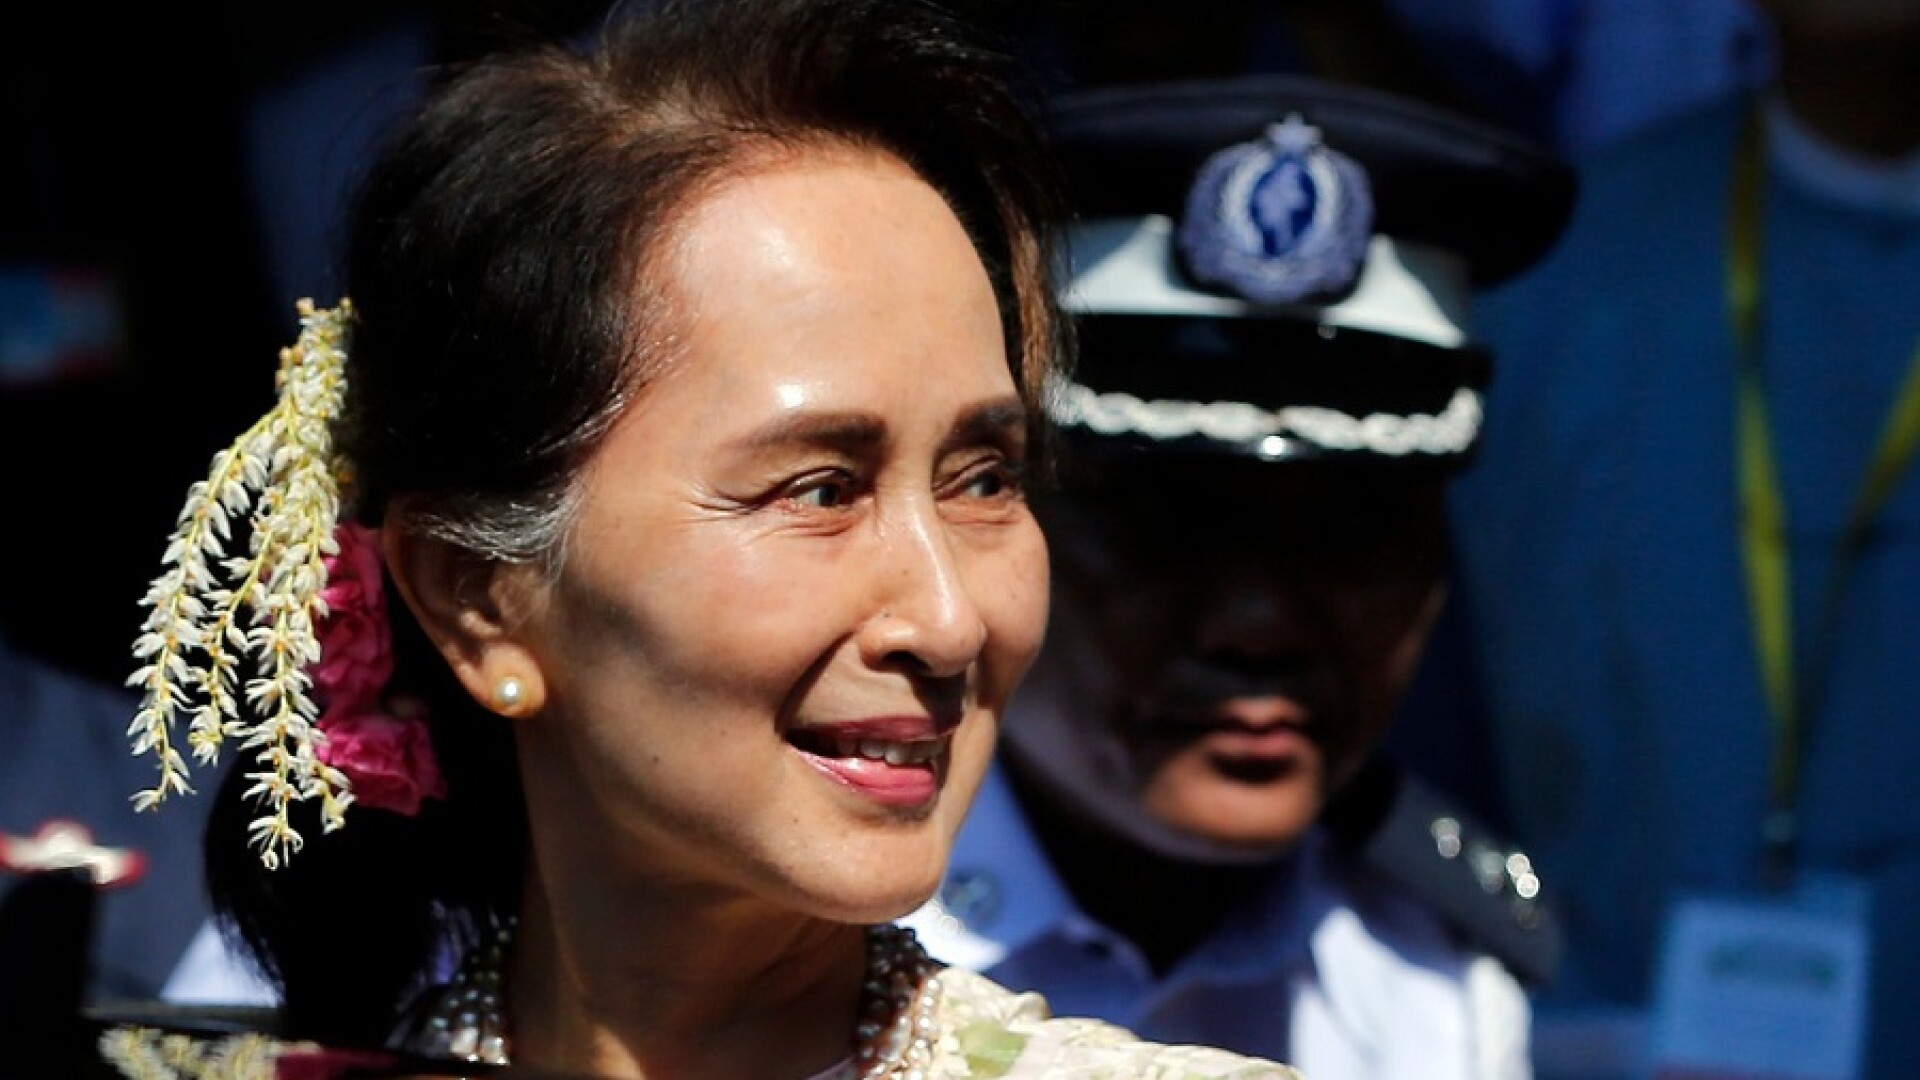 Aung San Suu Kyi, laureată cu premiul Nobel pentru Pace, a fost condamnată la 4 ani de închisoare